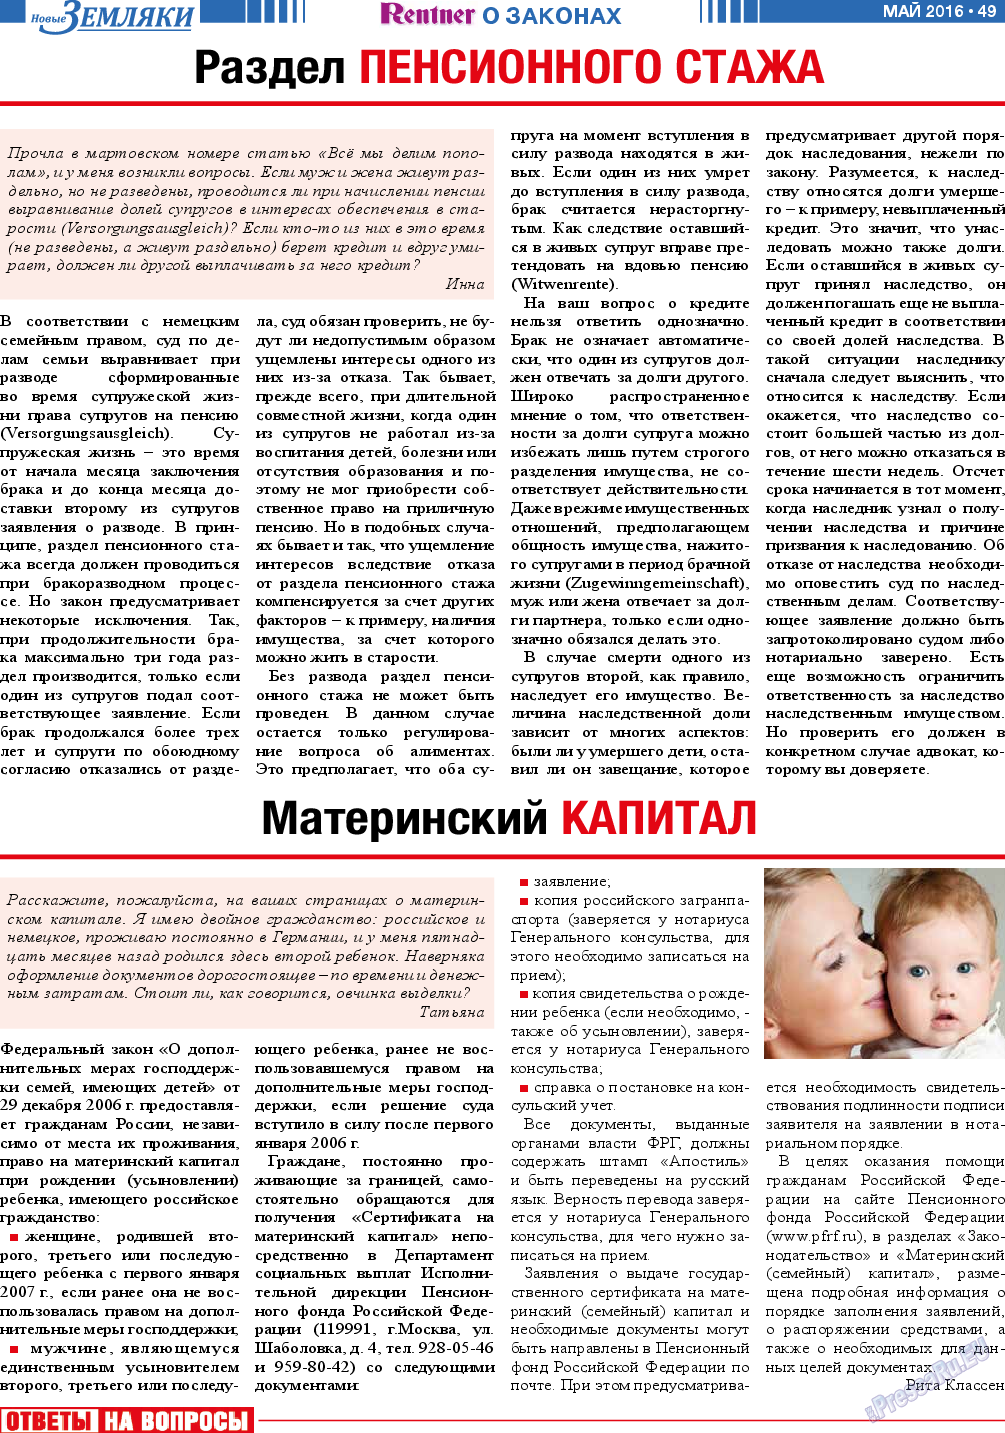 Новые Земляки, газета. 2016 №5 стр.49